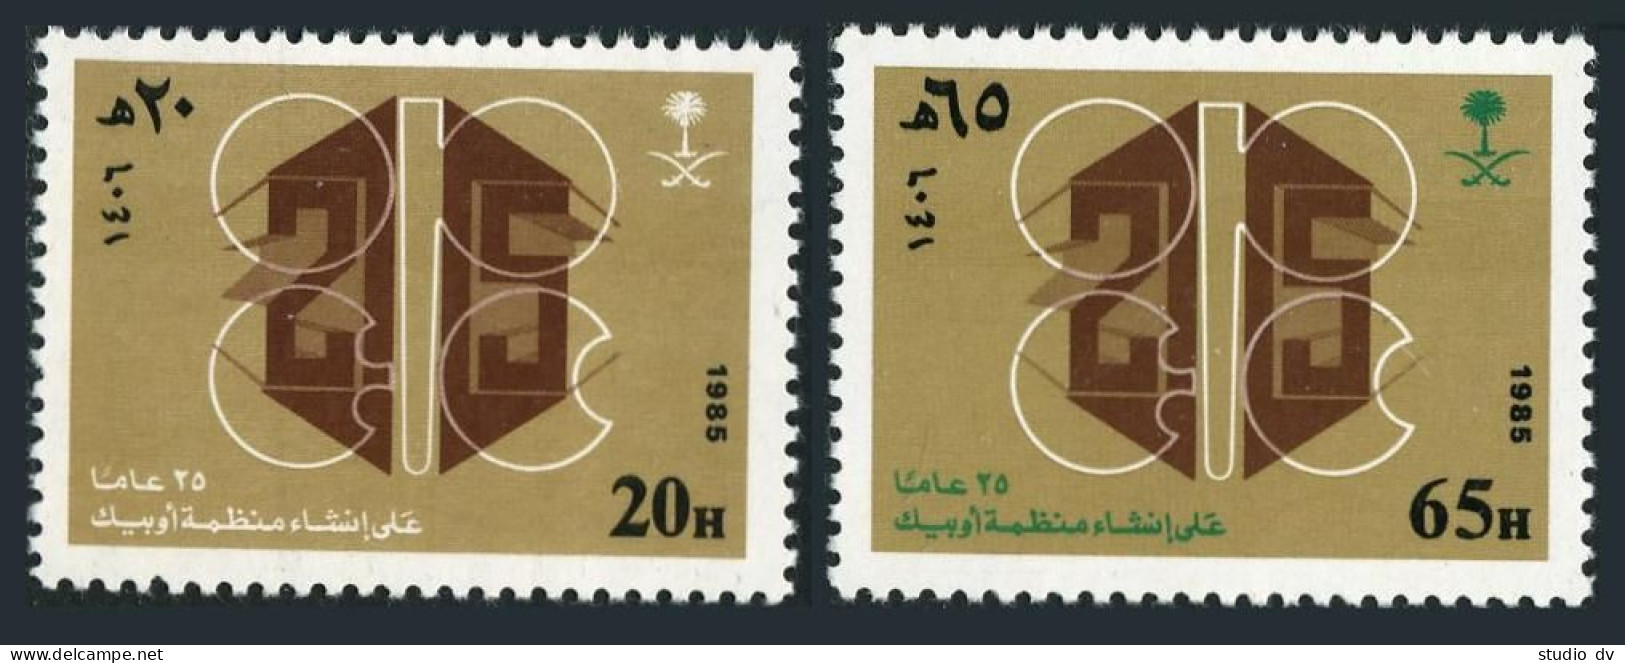 Saudi Arabia 959-960,MNH.Michel 832-833. OPEC-25,1985.Oil. - Arabie Saoudite